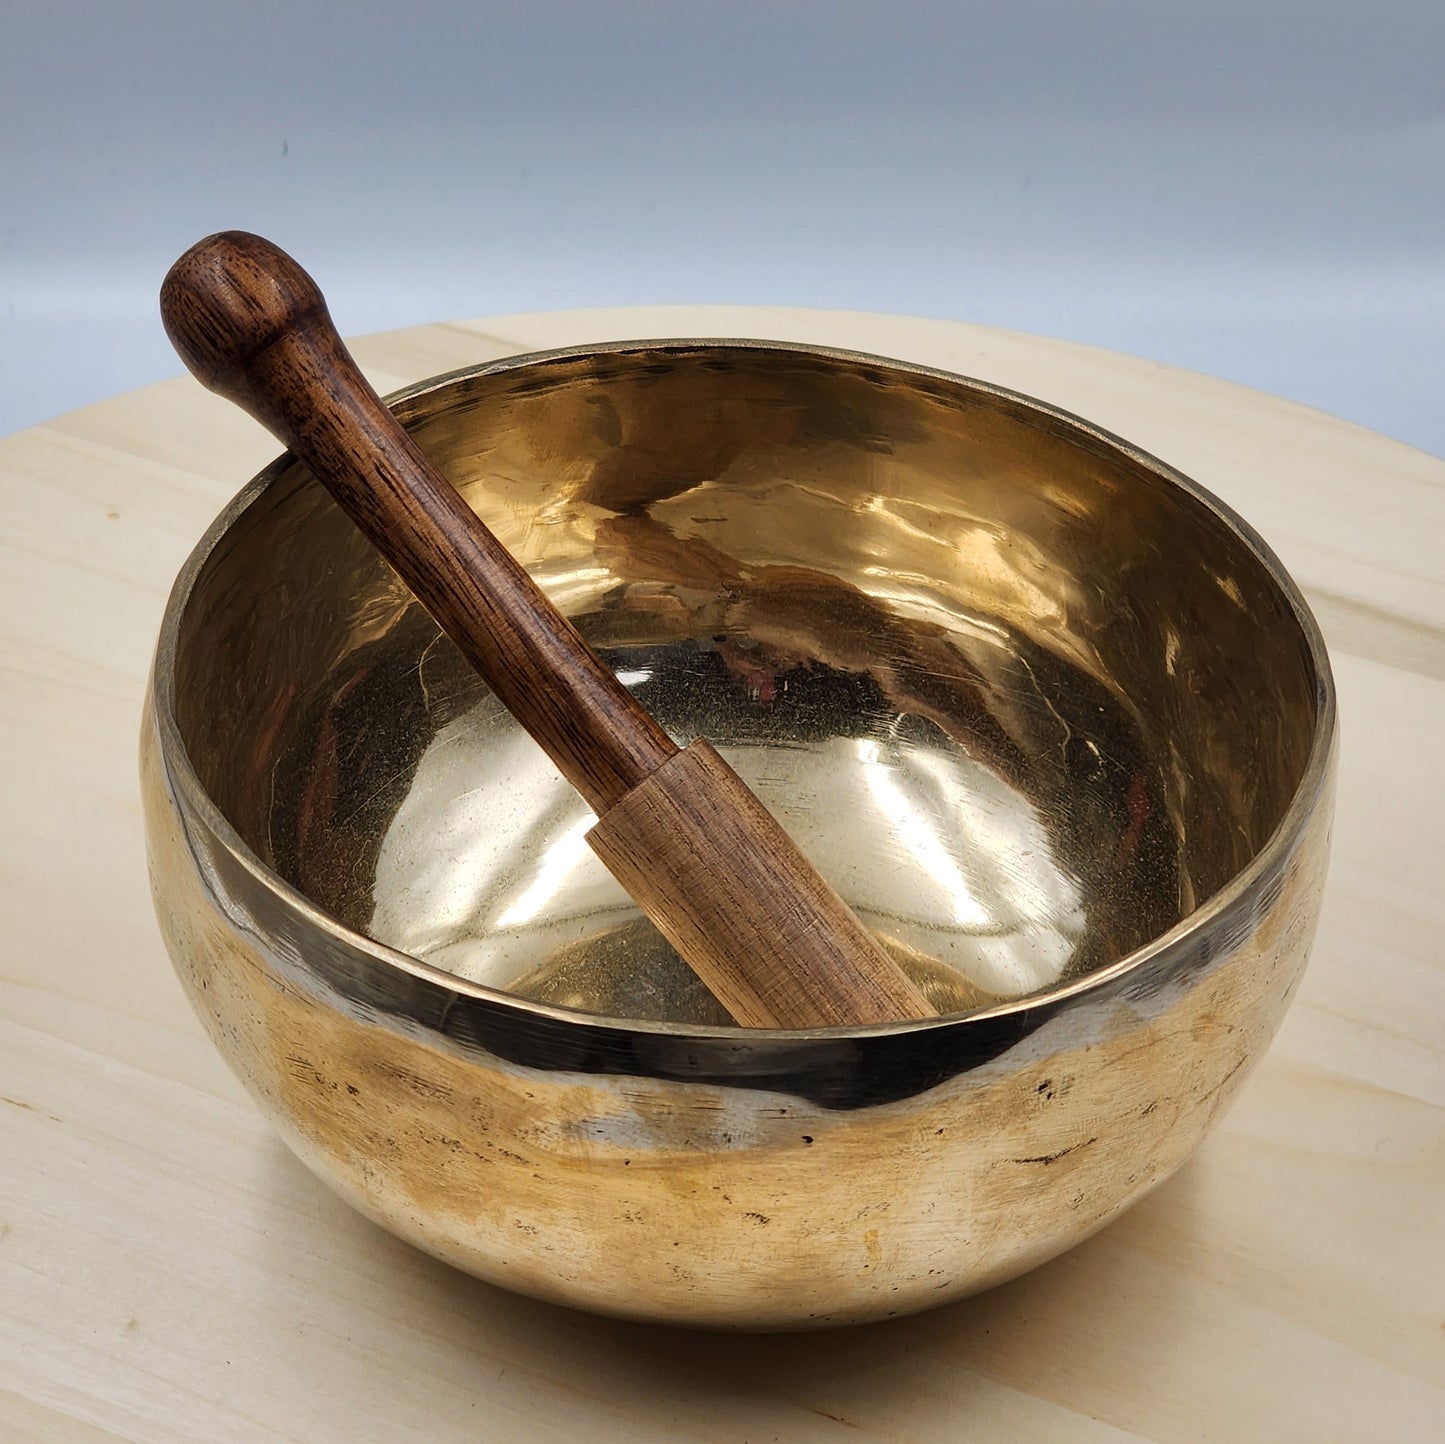 Tibetan Singing Bowl with stick 800g-899g